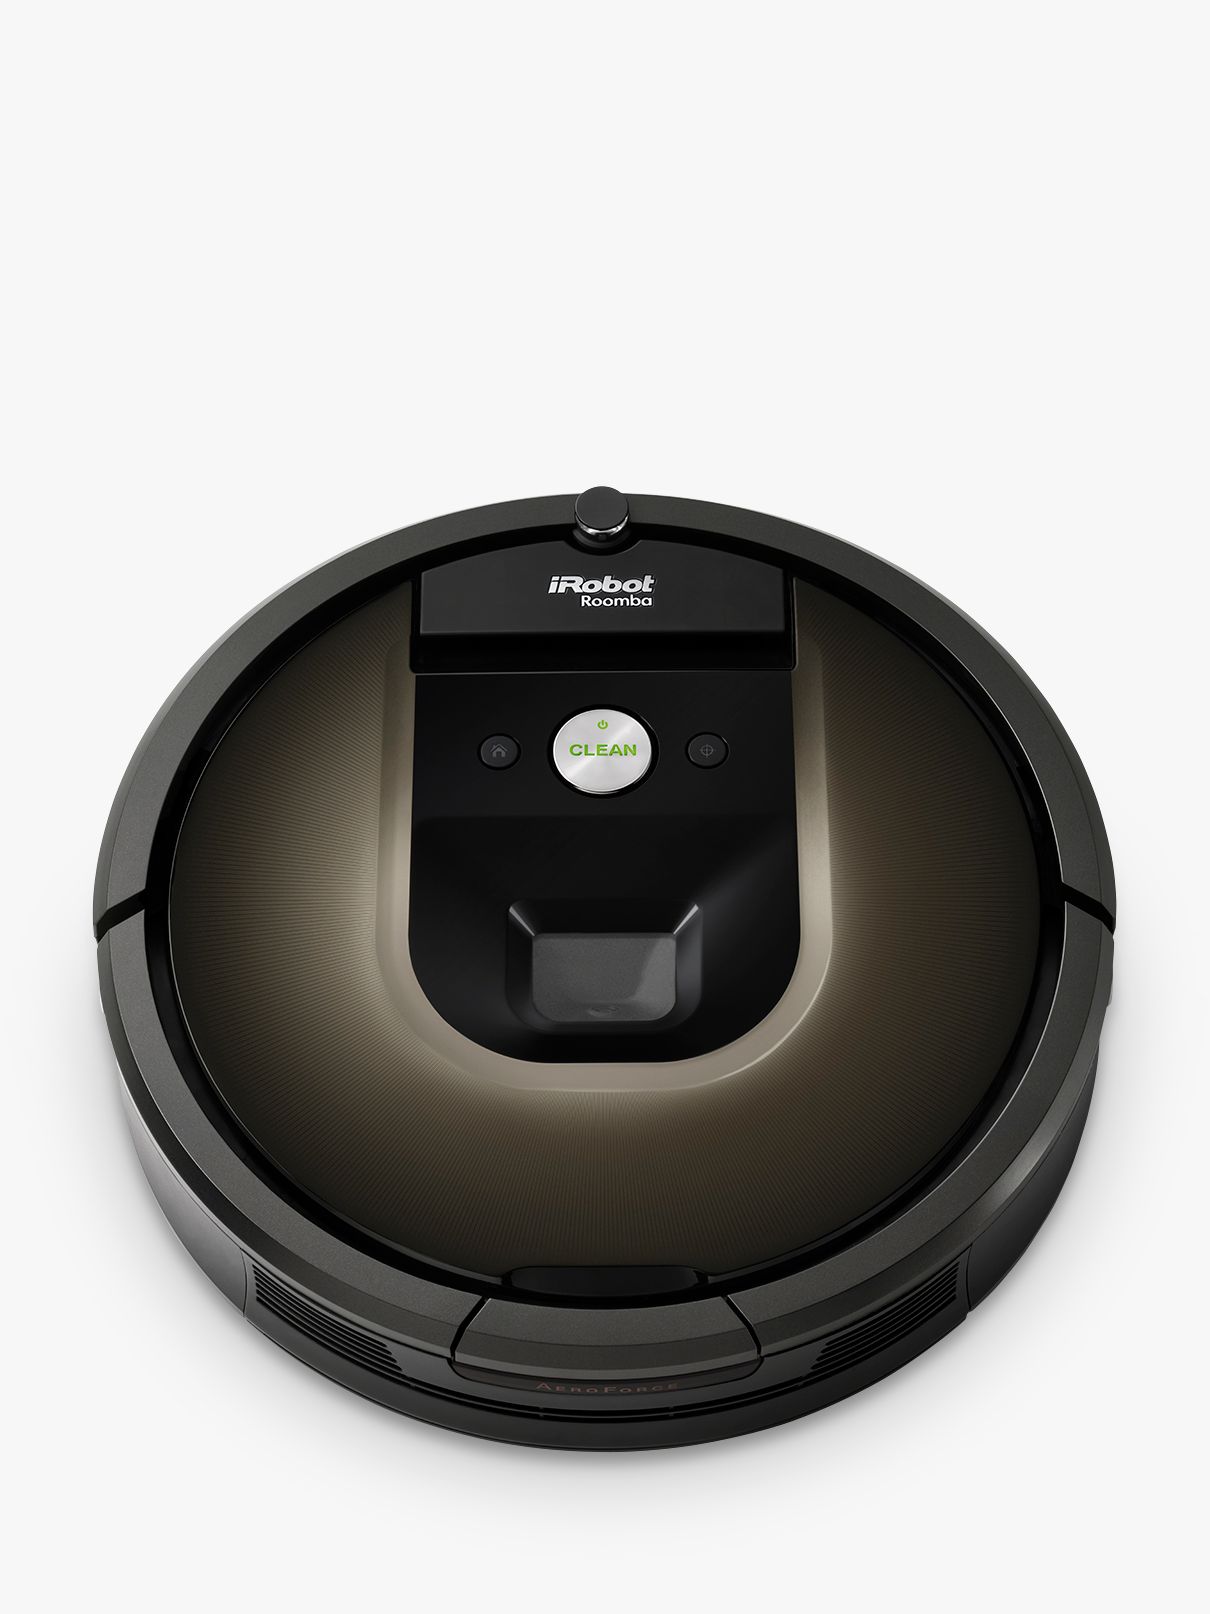 iRobot Roomba 980 Robot Vacuum Cleaner, Black / Brown